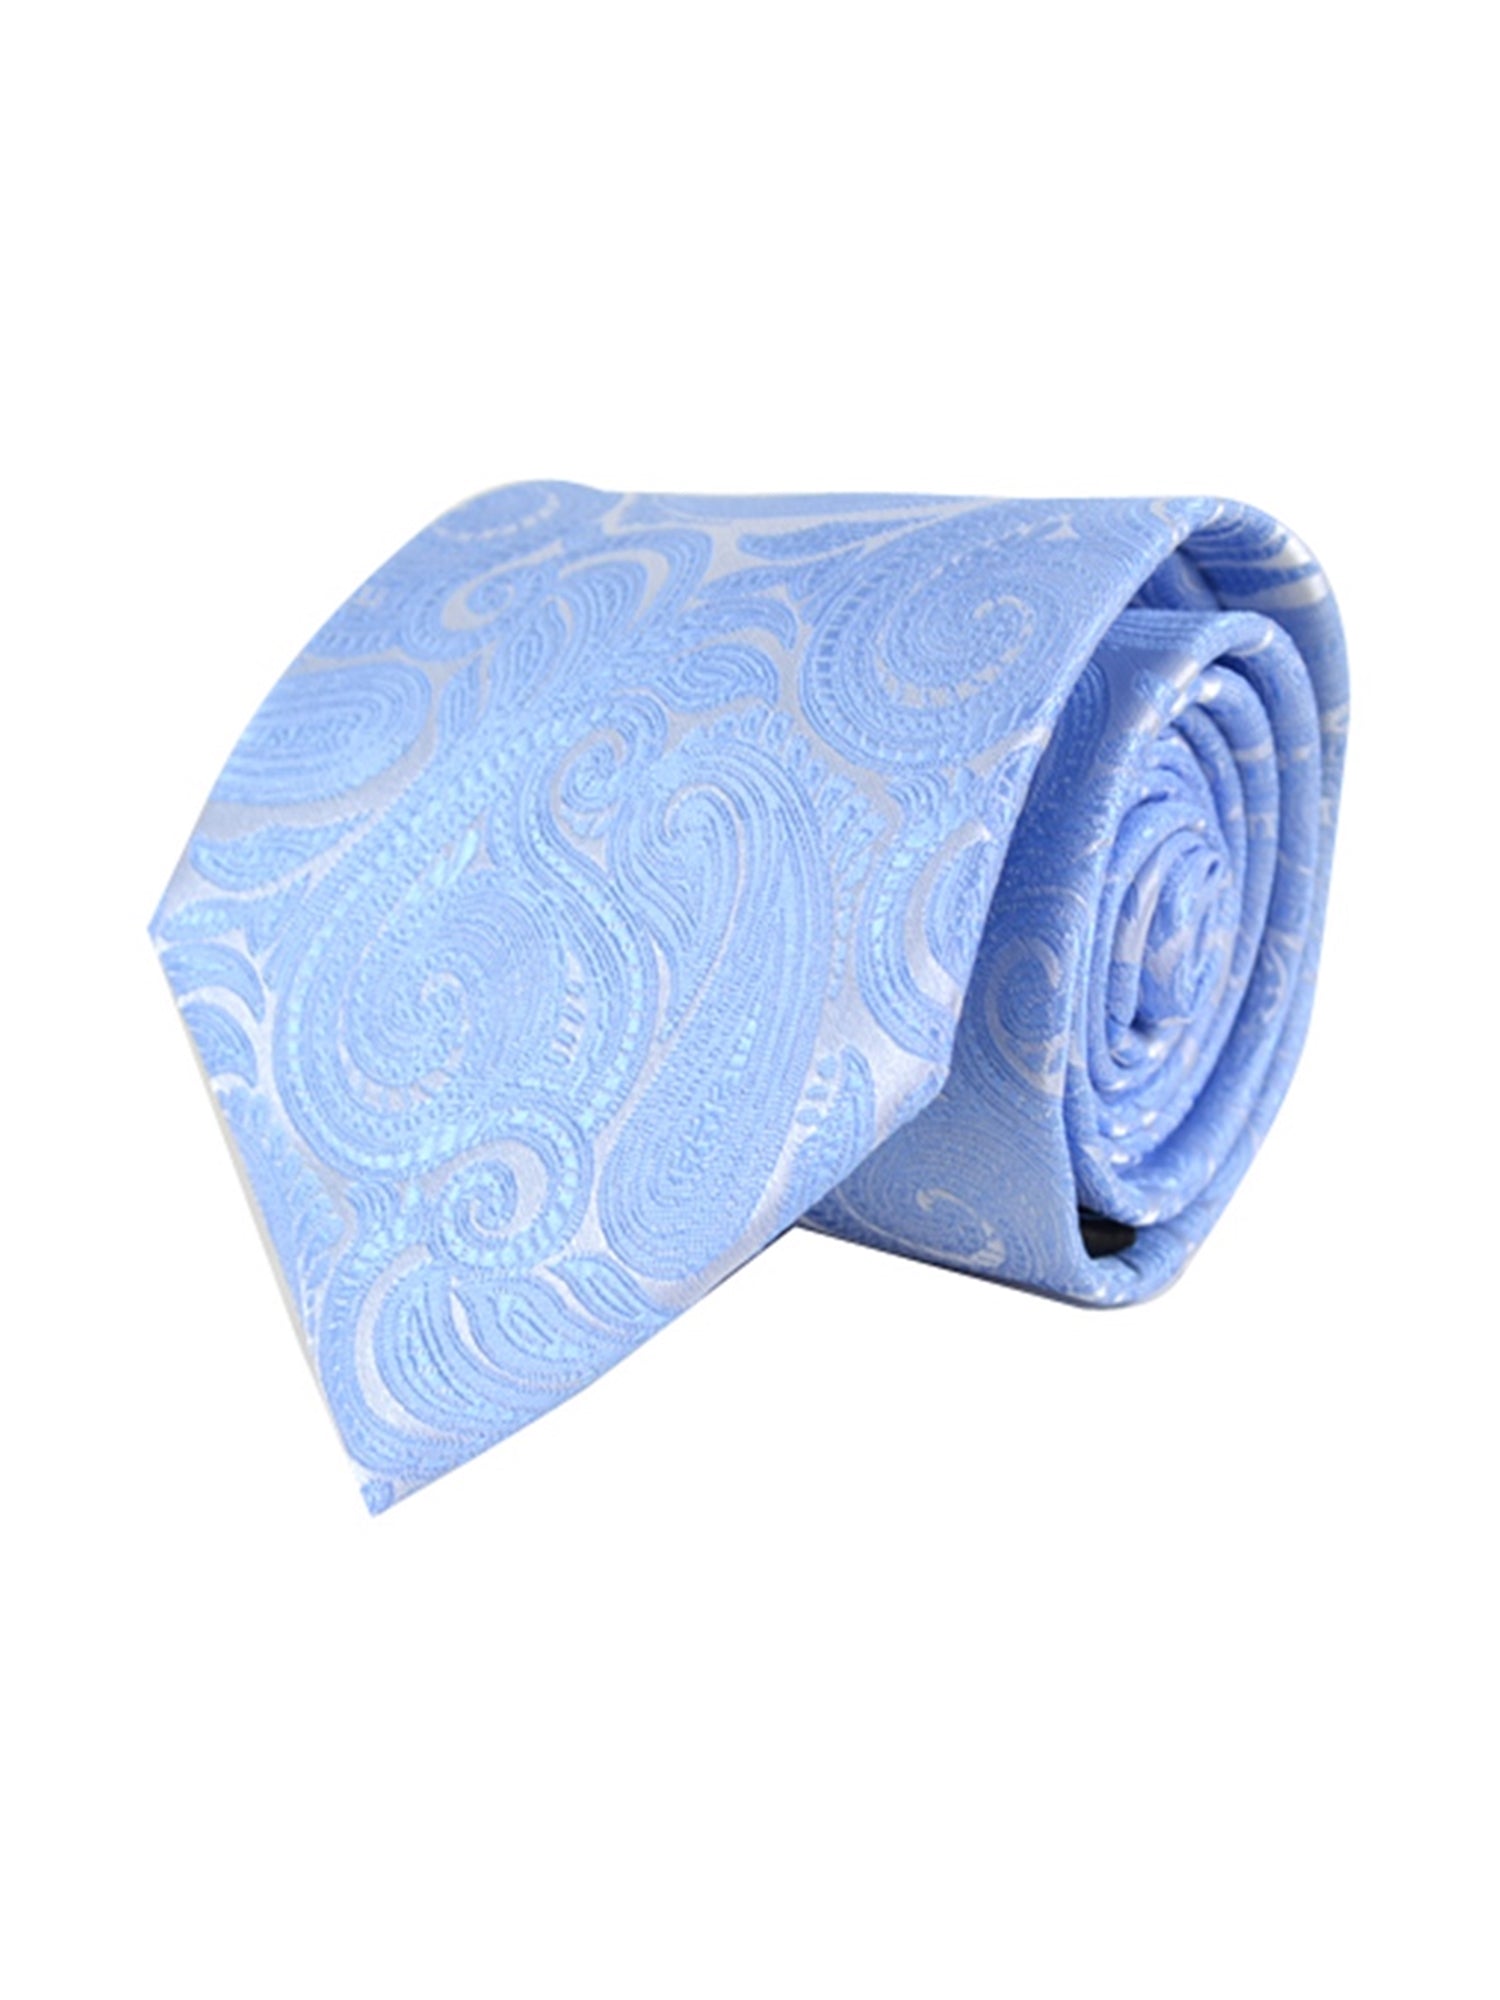 Men's Paisley Microfiber Poly Woven Wedding Neck Tie Neck Tie TheDapperTie Baby Blue Regular 